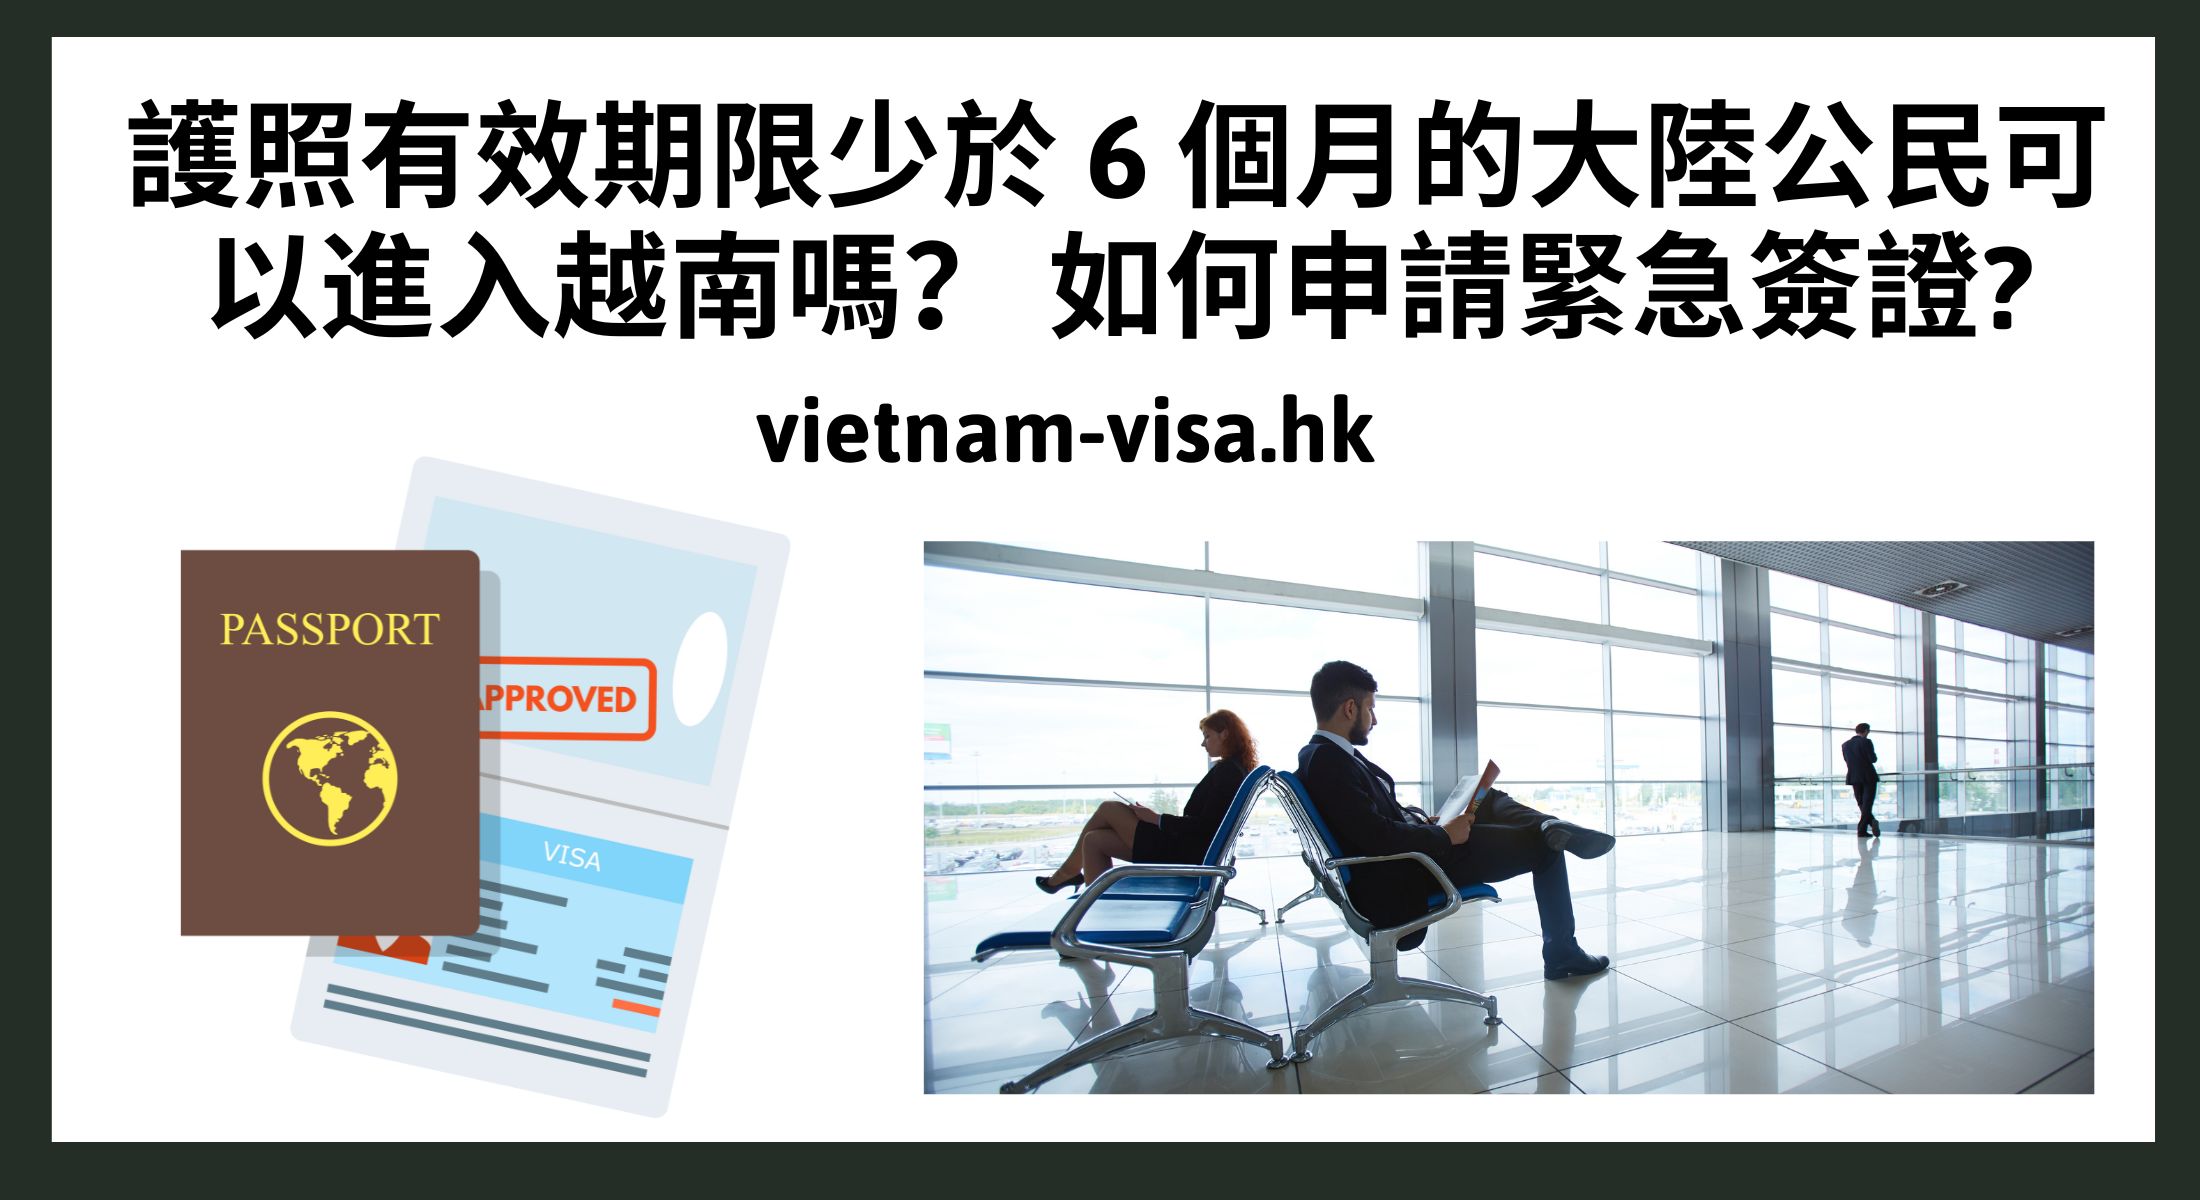 護照有效期限少於 6 個月的大陸公民可以進入越南嗎？ 如何申請緊急簽證?